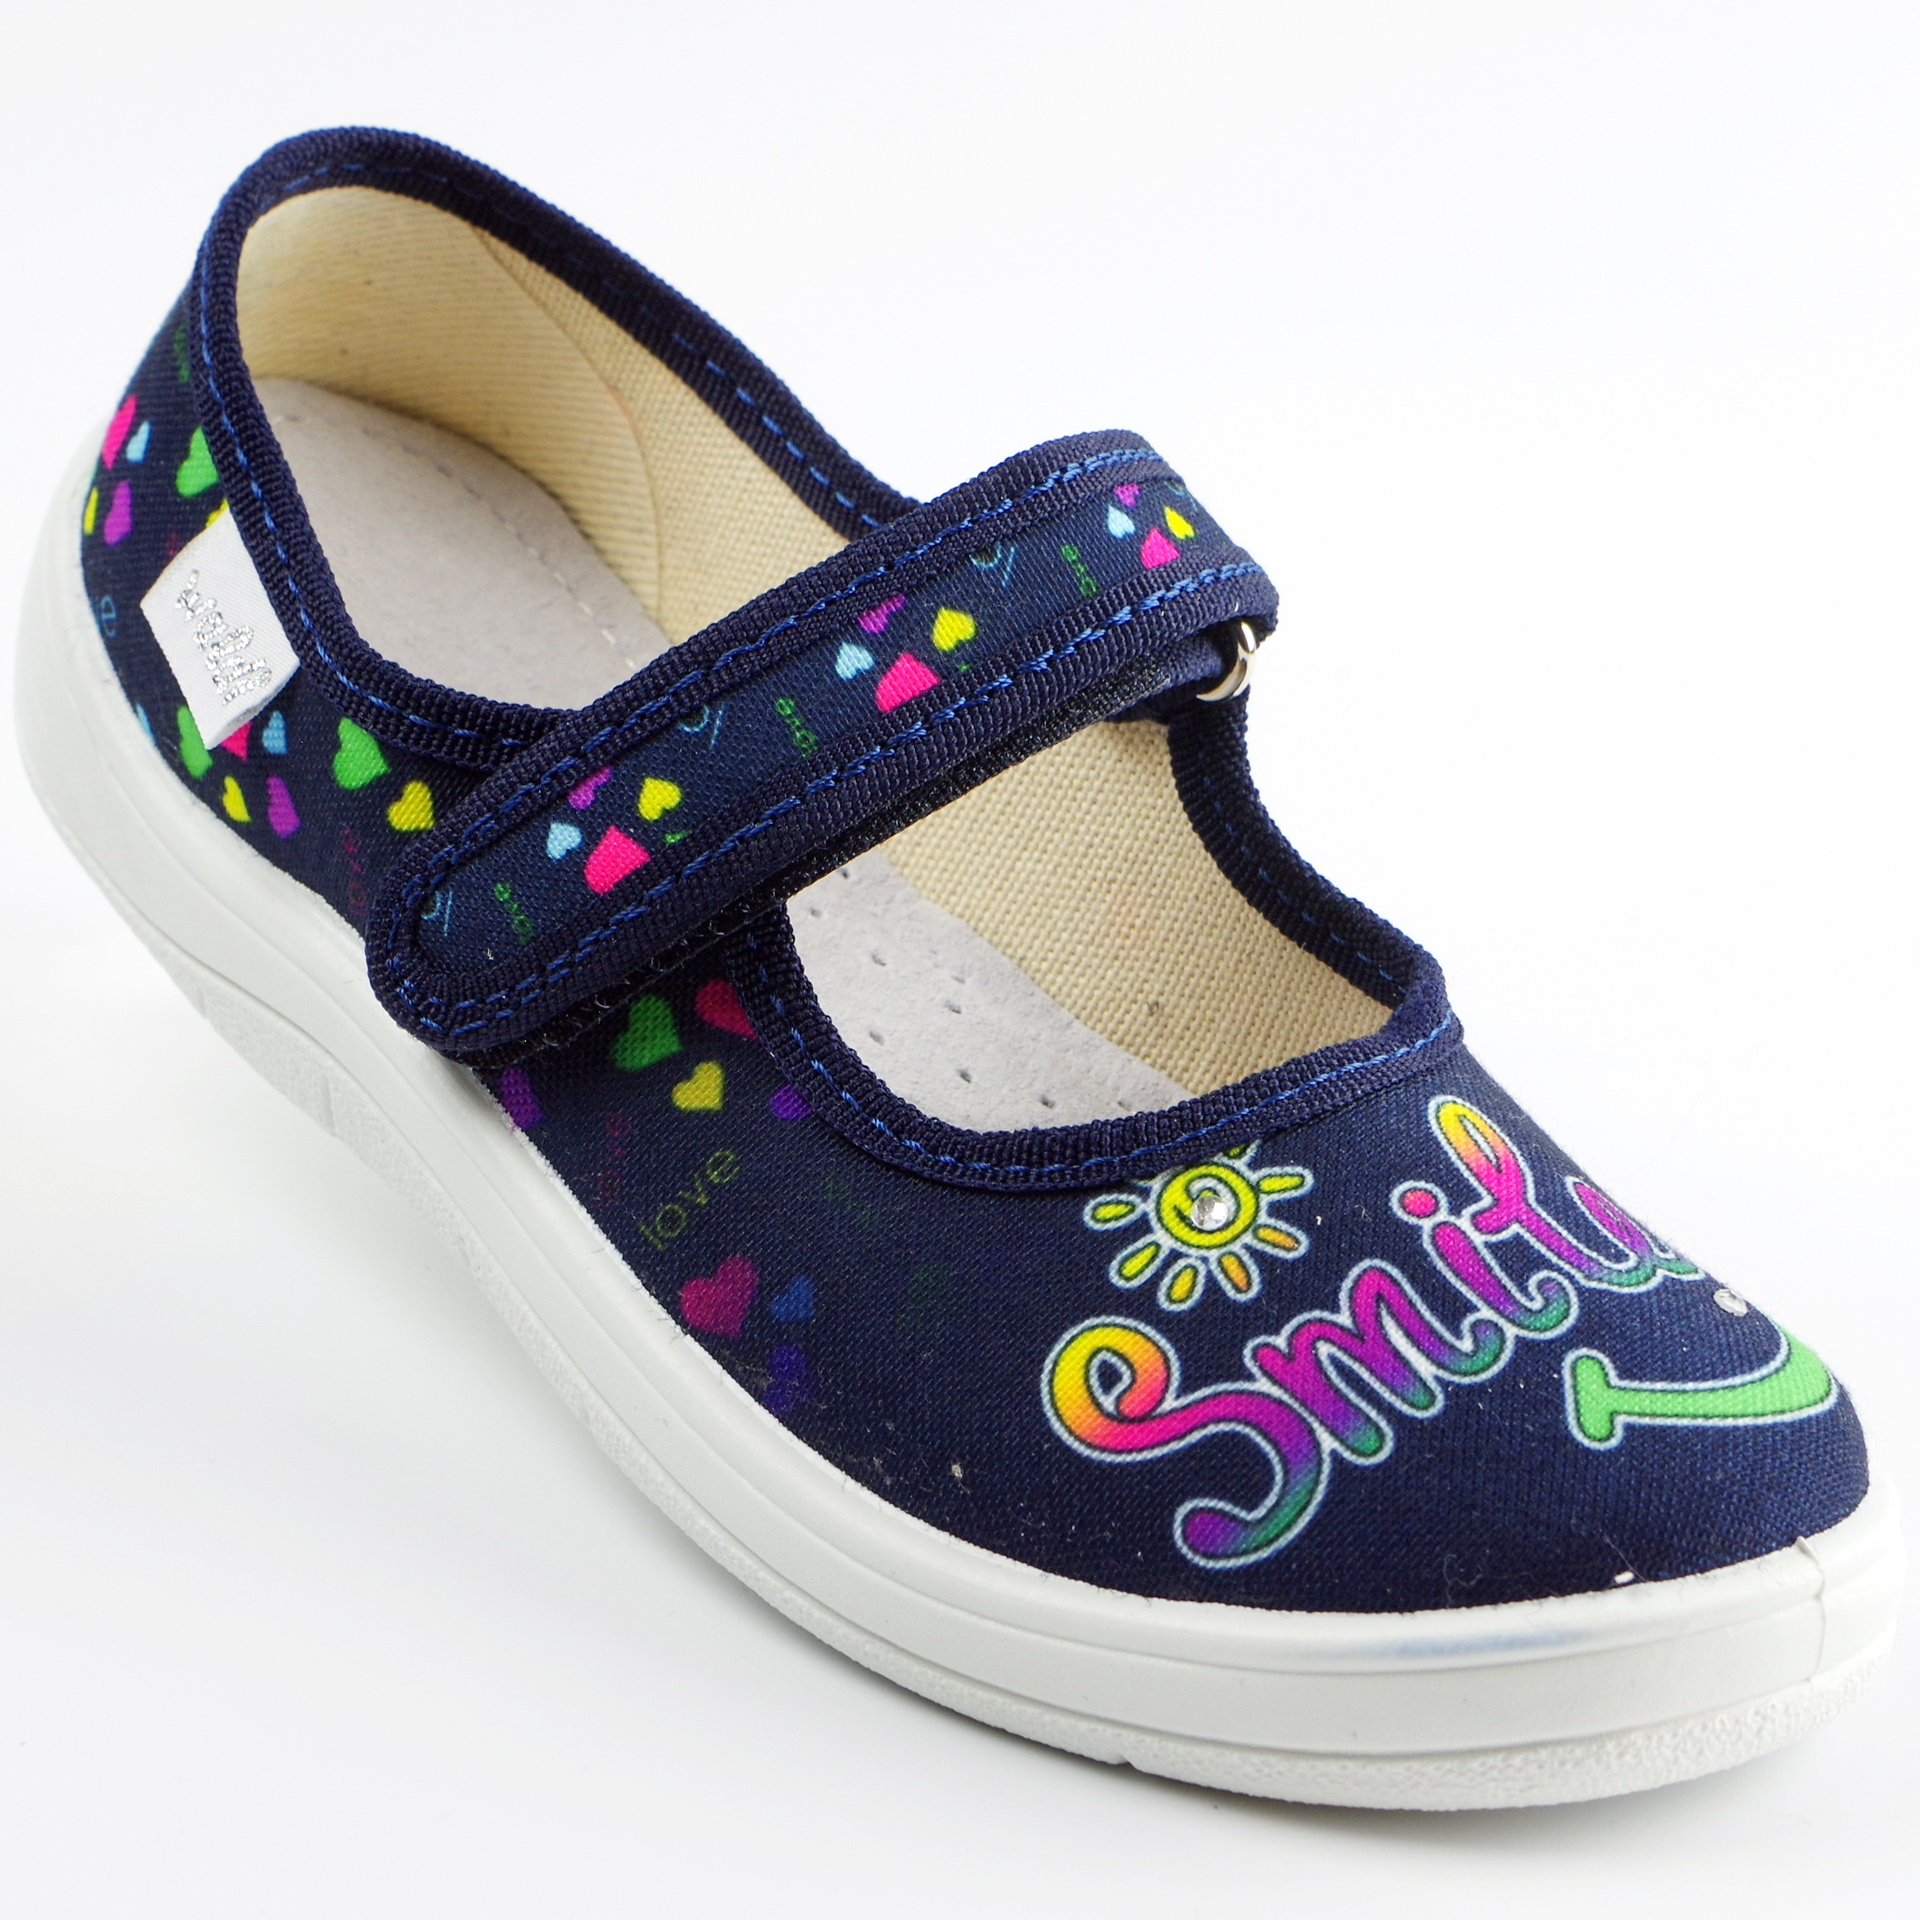 Текстильная обувь для девочек Тапочки Smile (2170) цвет Синий 24-30 размеры – Sole Kids